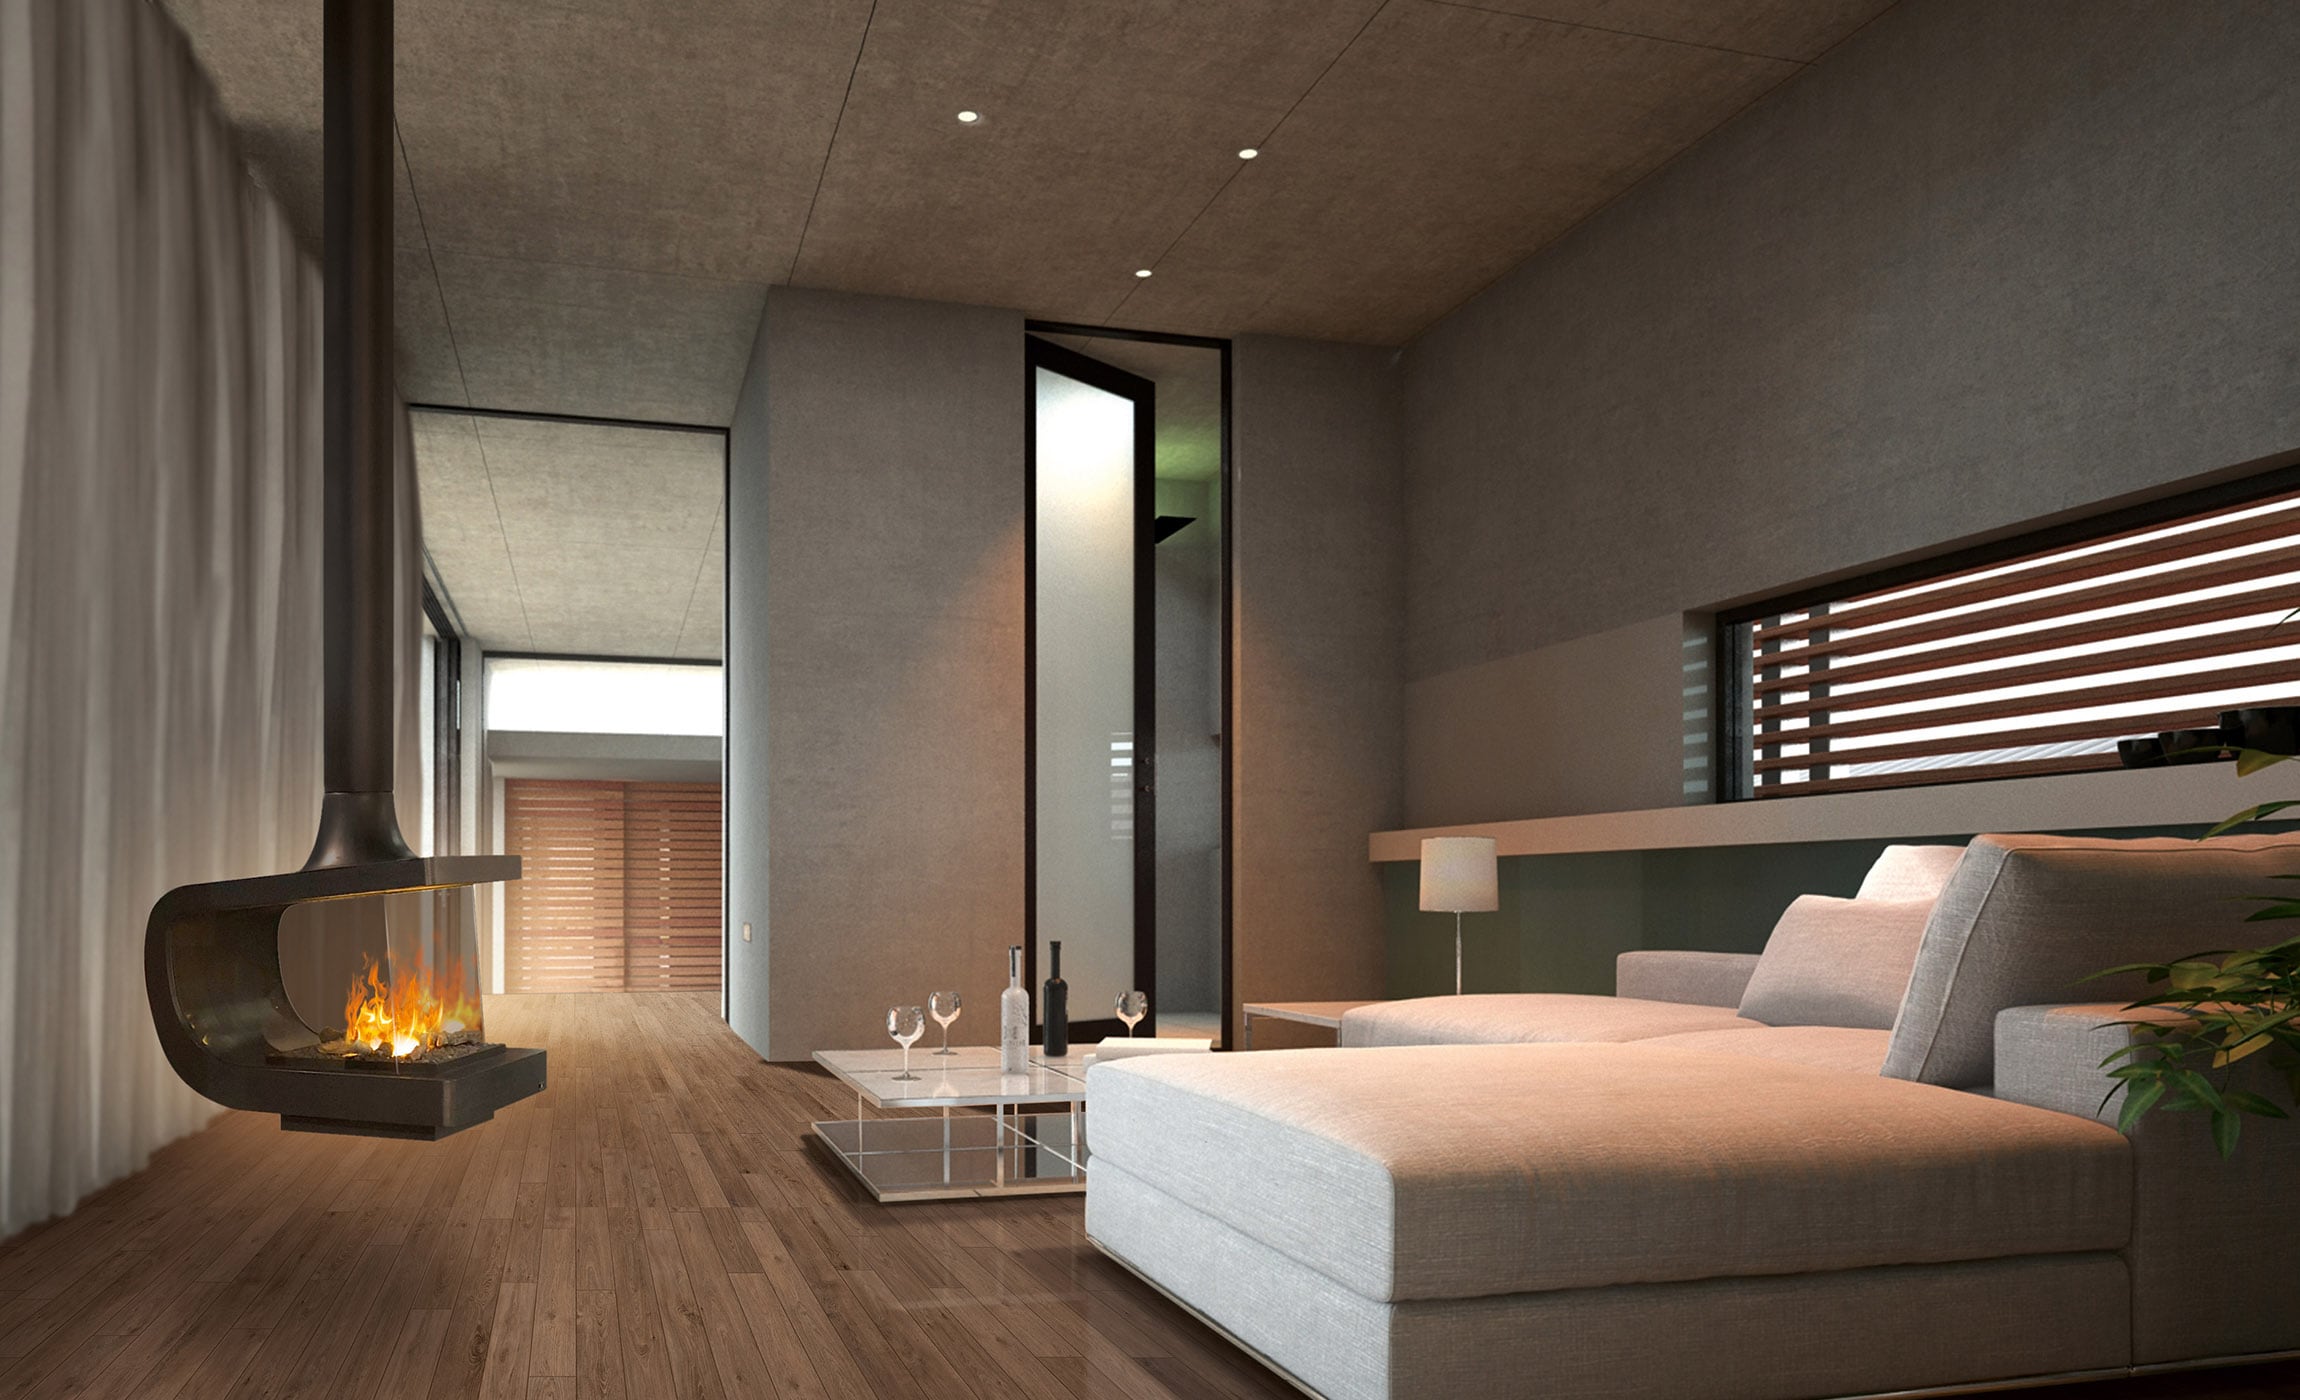 haas-design.at-hotel-und-home-interior-onlineshop-tuev-geprueft-effektfeuerkamin-deckenloesung-ceiling